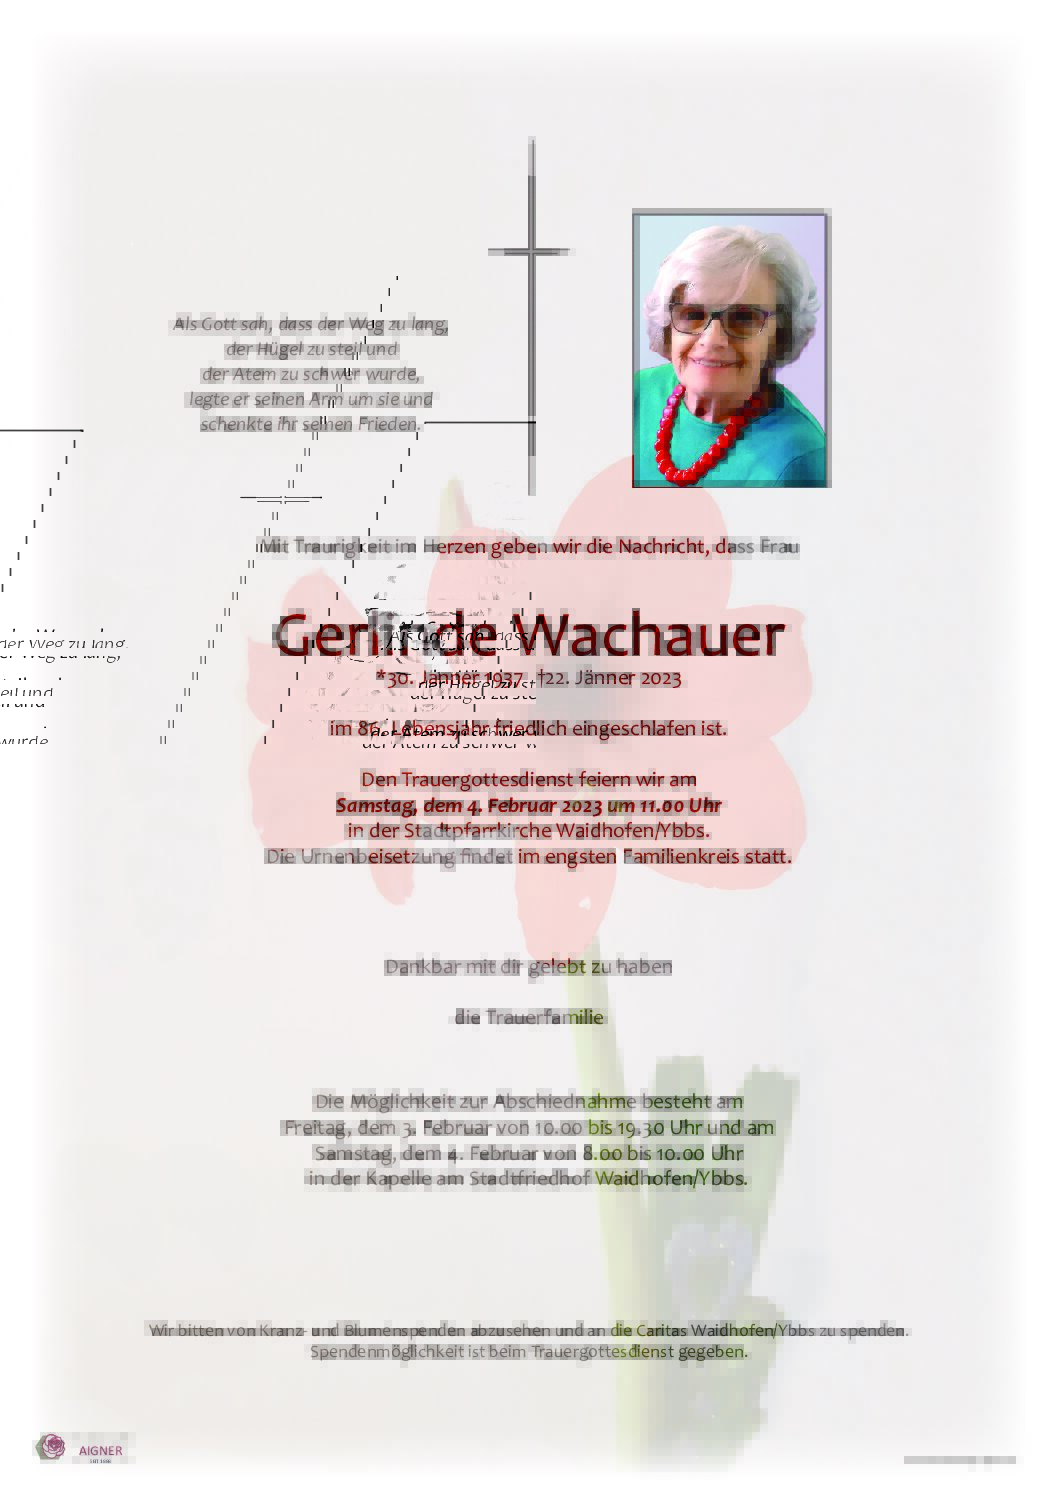 Gerlinde Wachauer